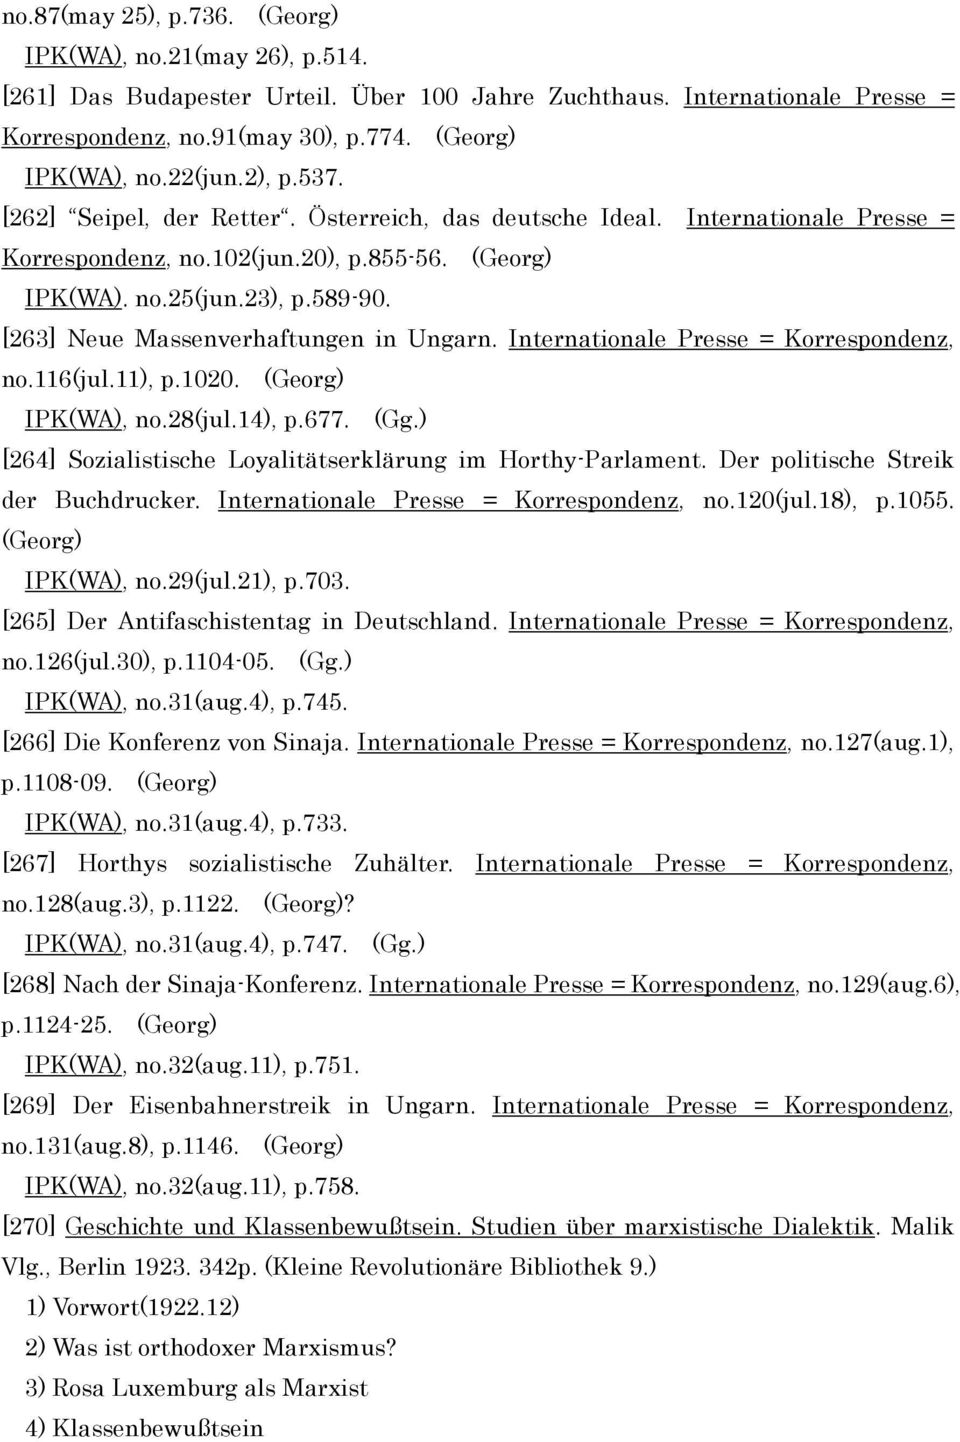 [263] Neue Massenverhaftungen in Ungarn. Internationale Presse = Korrespondenz, no.116(jul.11), p.1020. (Georg) IPK(WA), no.28(jul.14), p.677. (Gg.